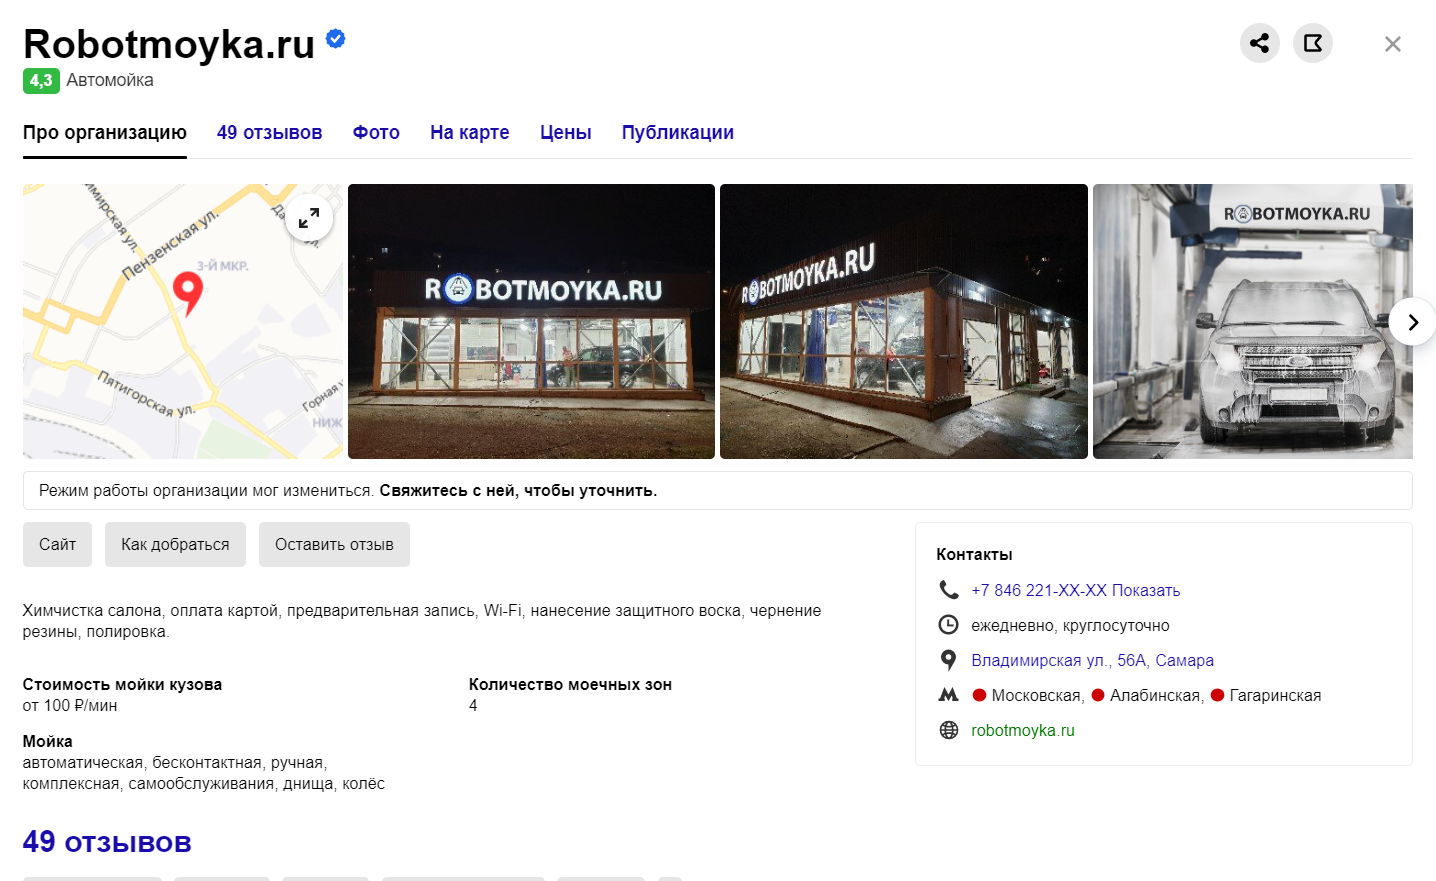 Место где можно купить автоматизированную мойку в России